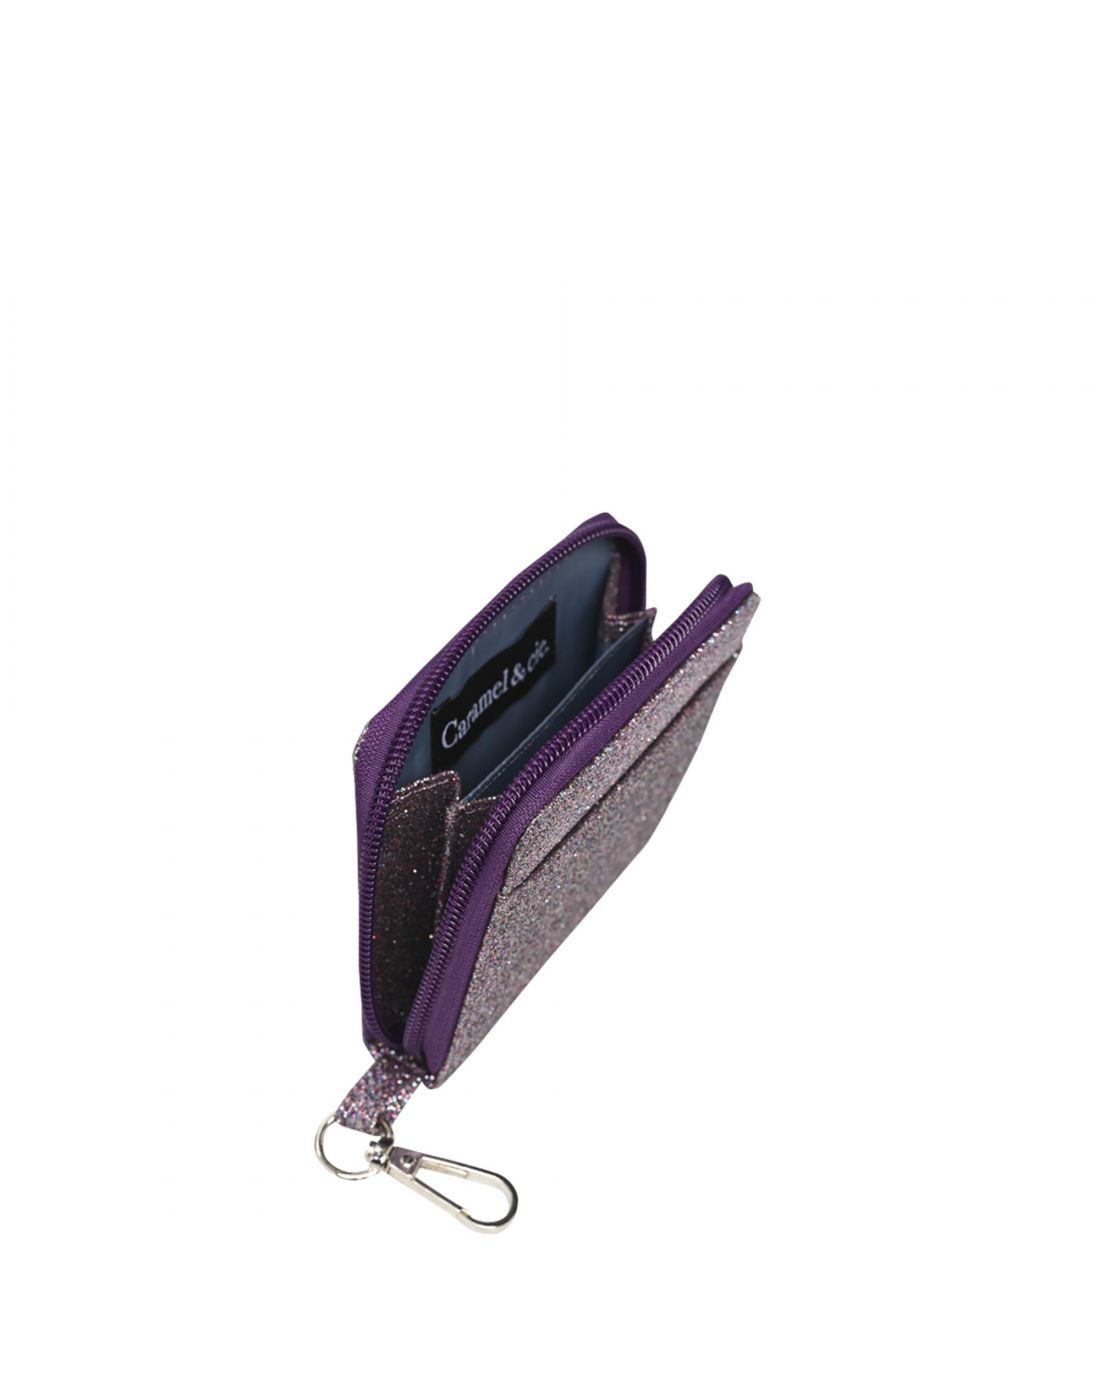 Caramel Wallet Purple Glitter